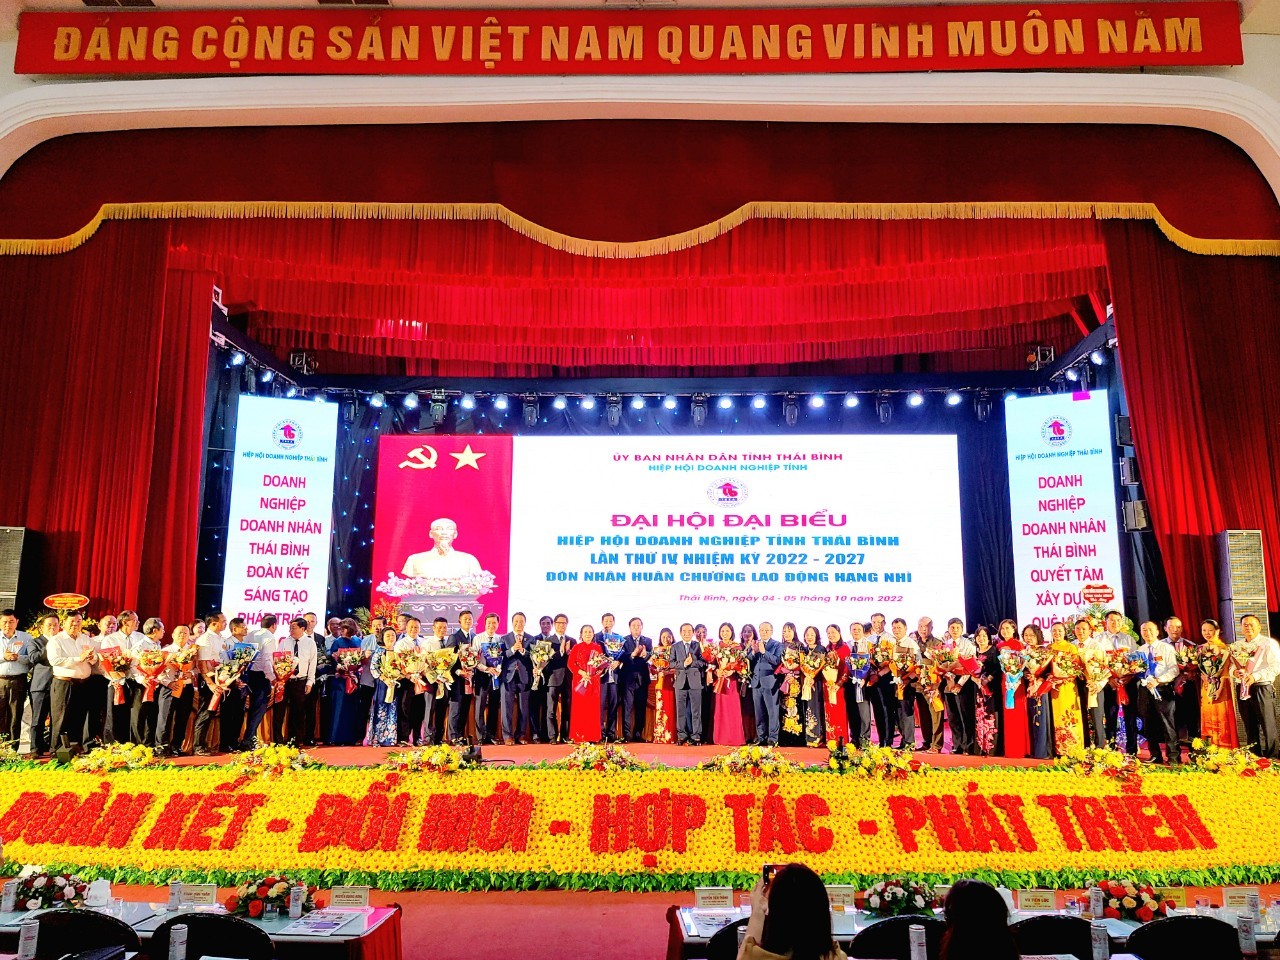  Đại hội đại biểu HHDN tỉnh Thái Bình nhiệm kỳ 2022-2027